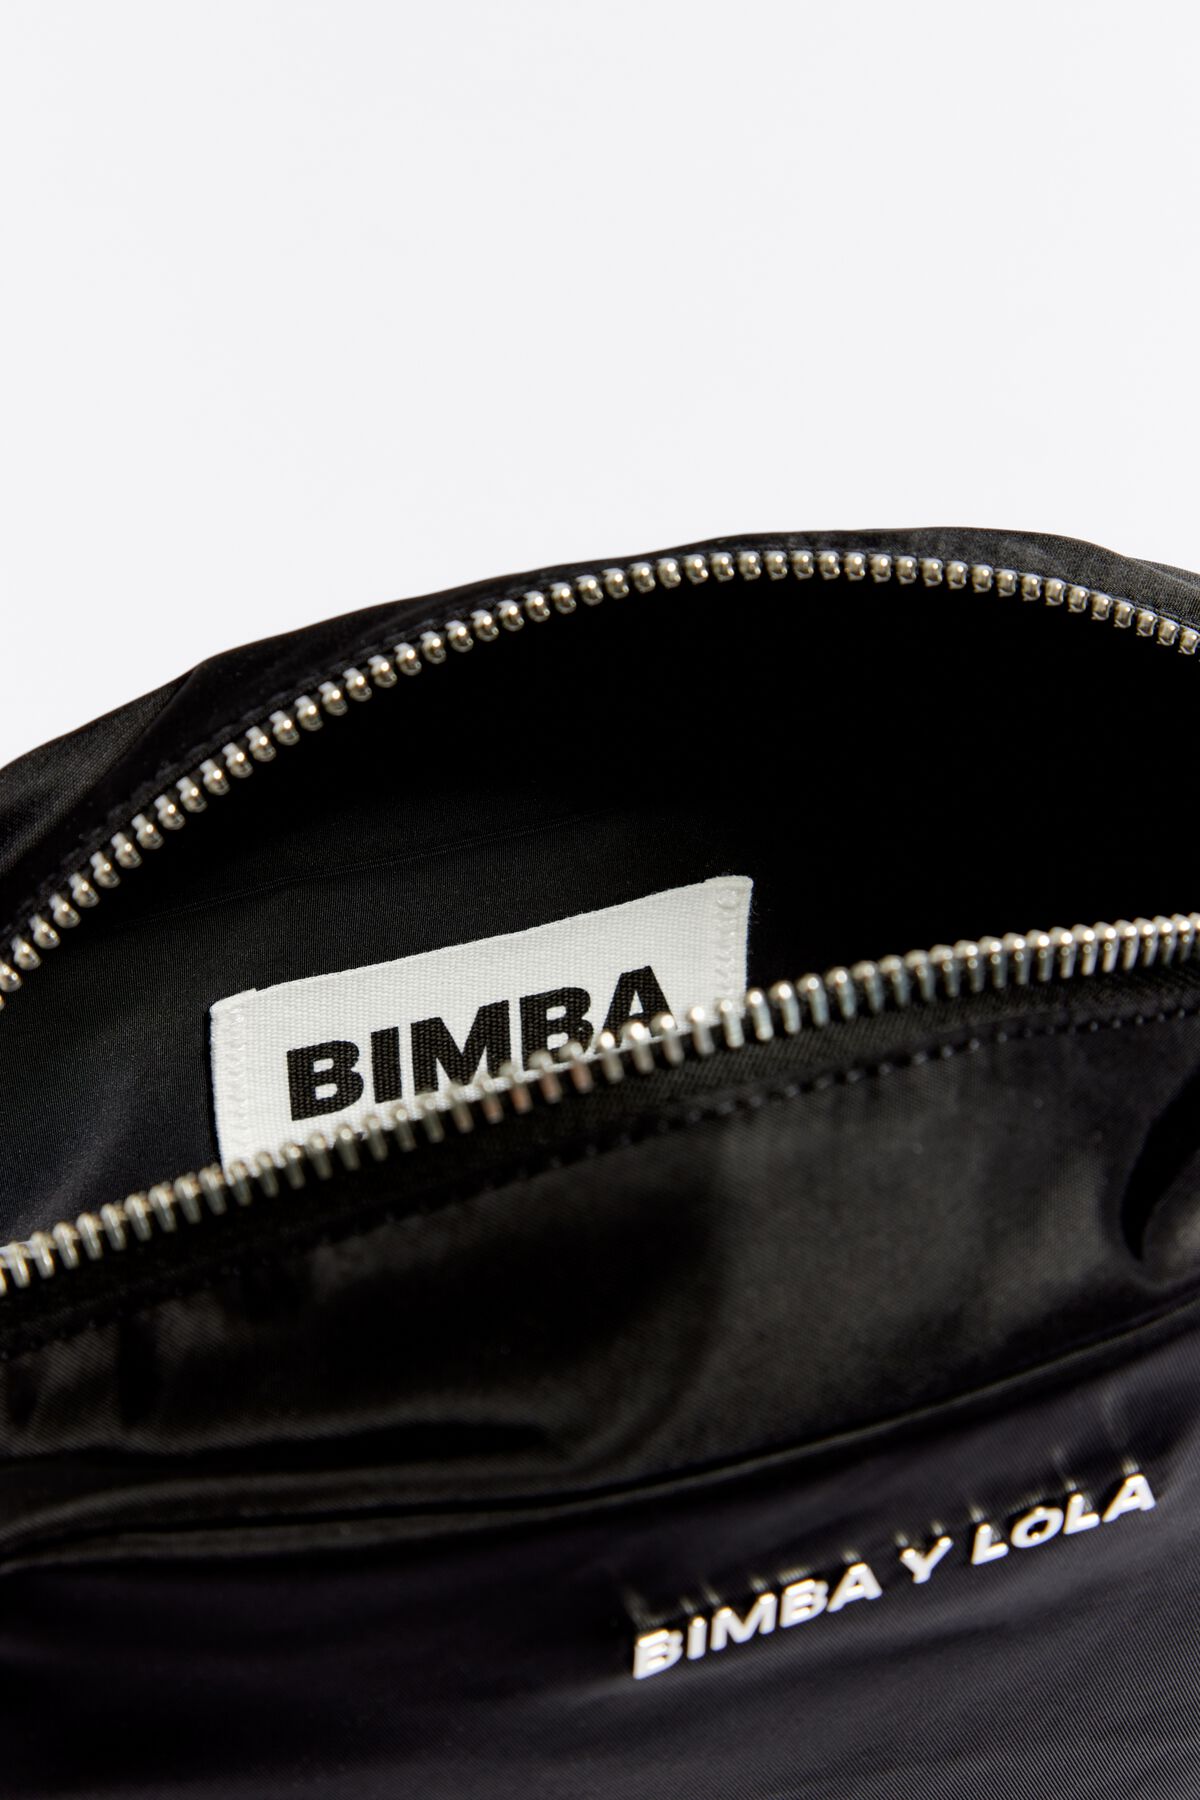 Bimba y Lola 191BBNY2L - Bolso bandolera para mujer, color negro :  : Ropa, Zapatos y Accesorios